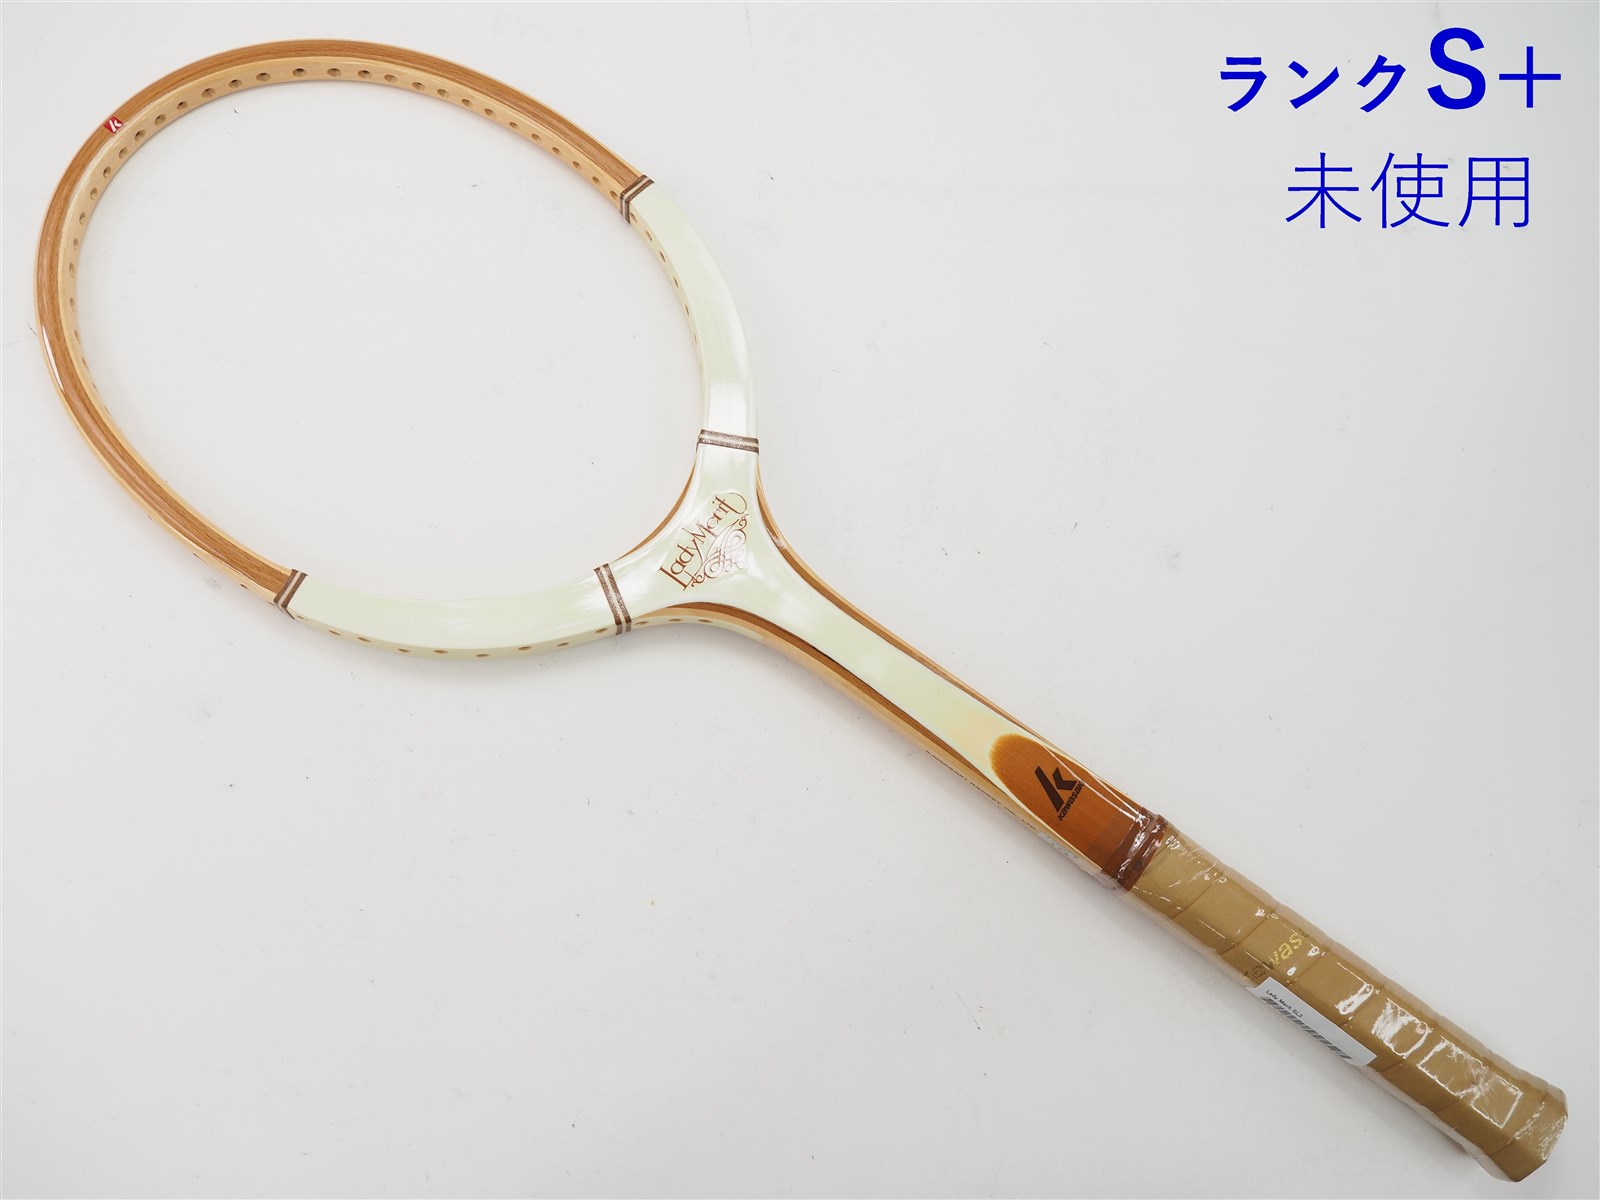 カワサキ 未使用 '80s Wreath リース KAWASAKI カワサキラケット W63 M 白 キュロットスカート 588 当時 バドミントン テニス ヴィンテージ 日本製